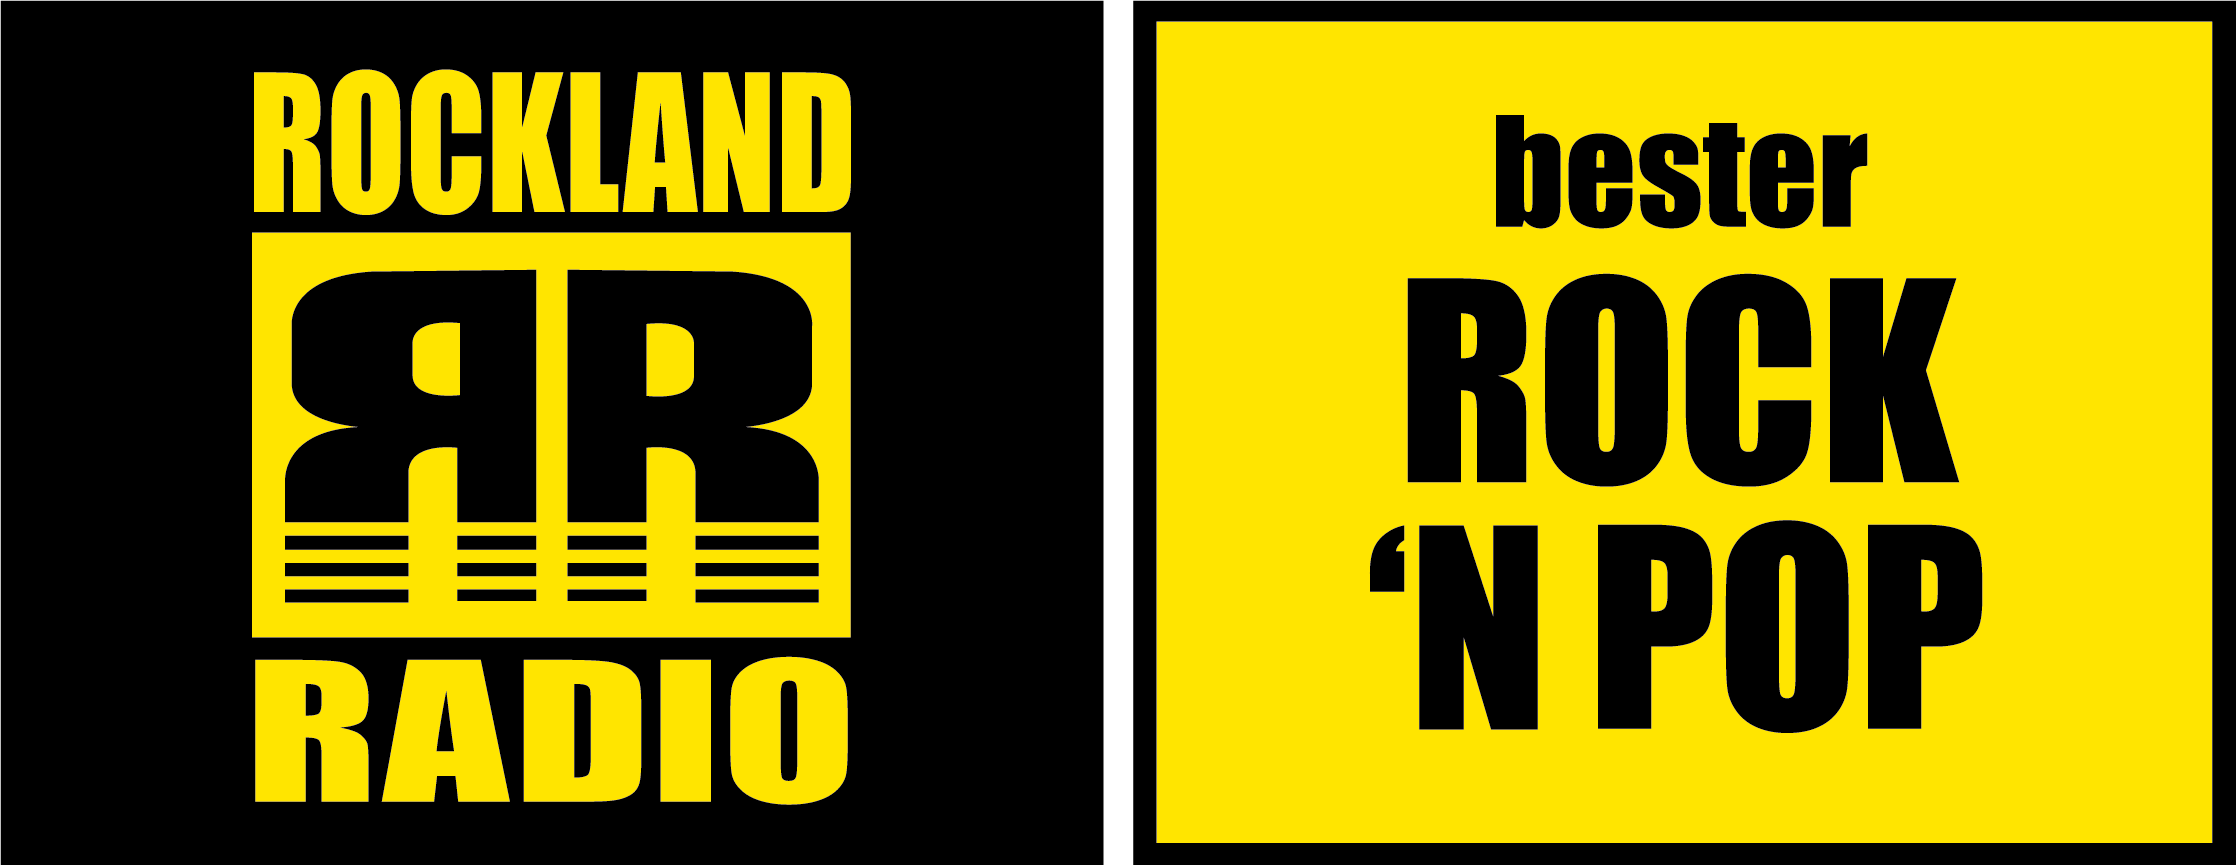 Rockland-Radio Werbespot für CH. METZLER